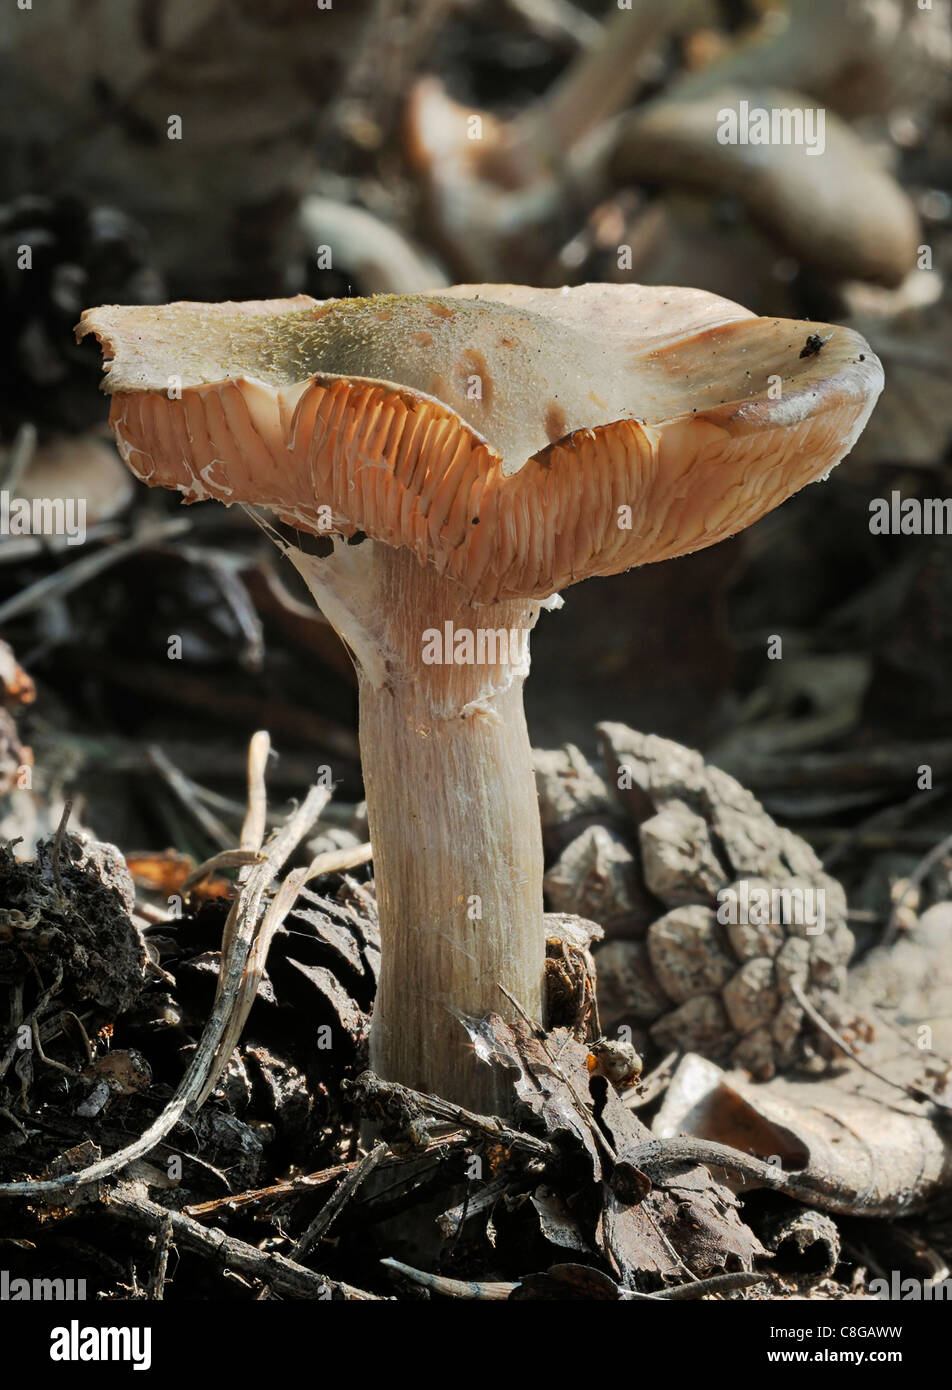 Webcap fungus - Cortinarius sp Stock Photo